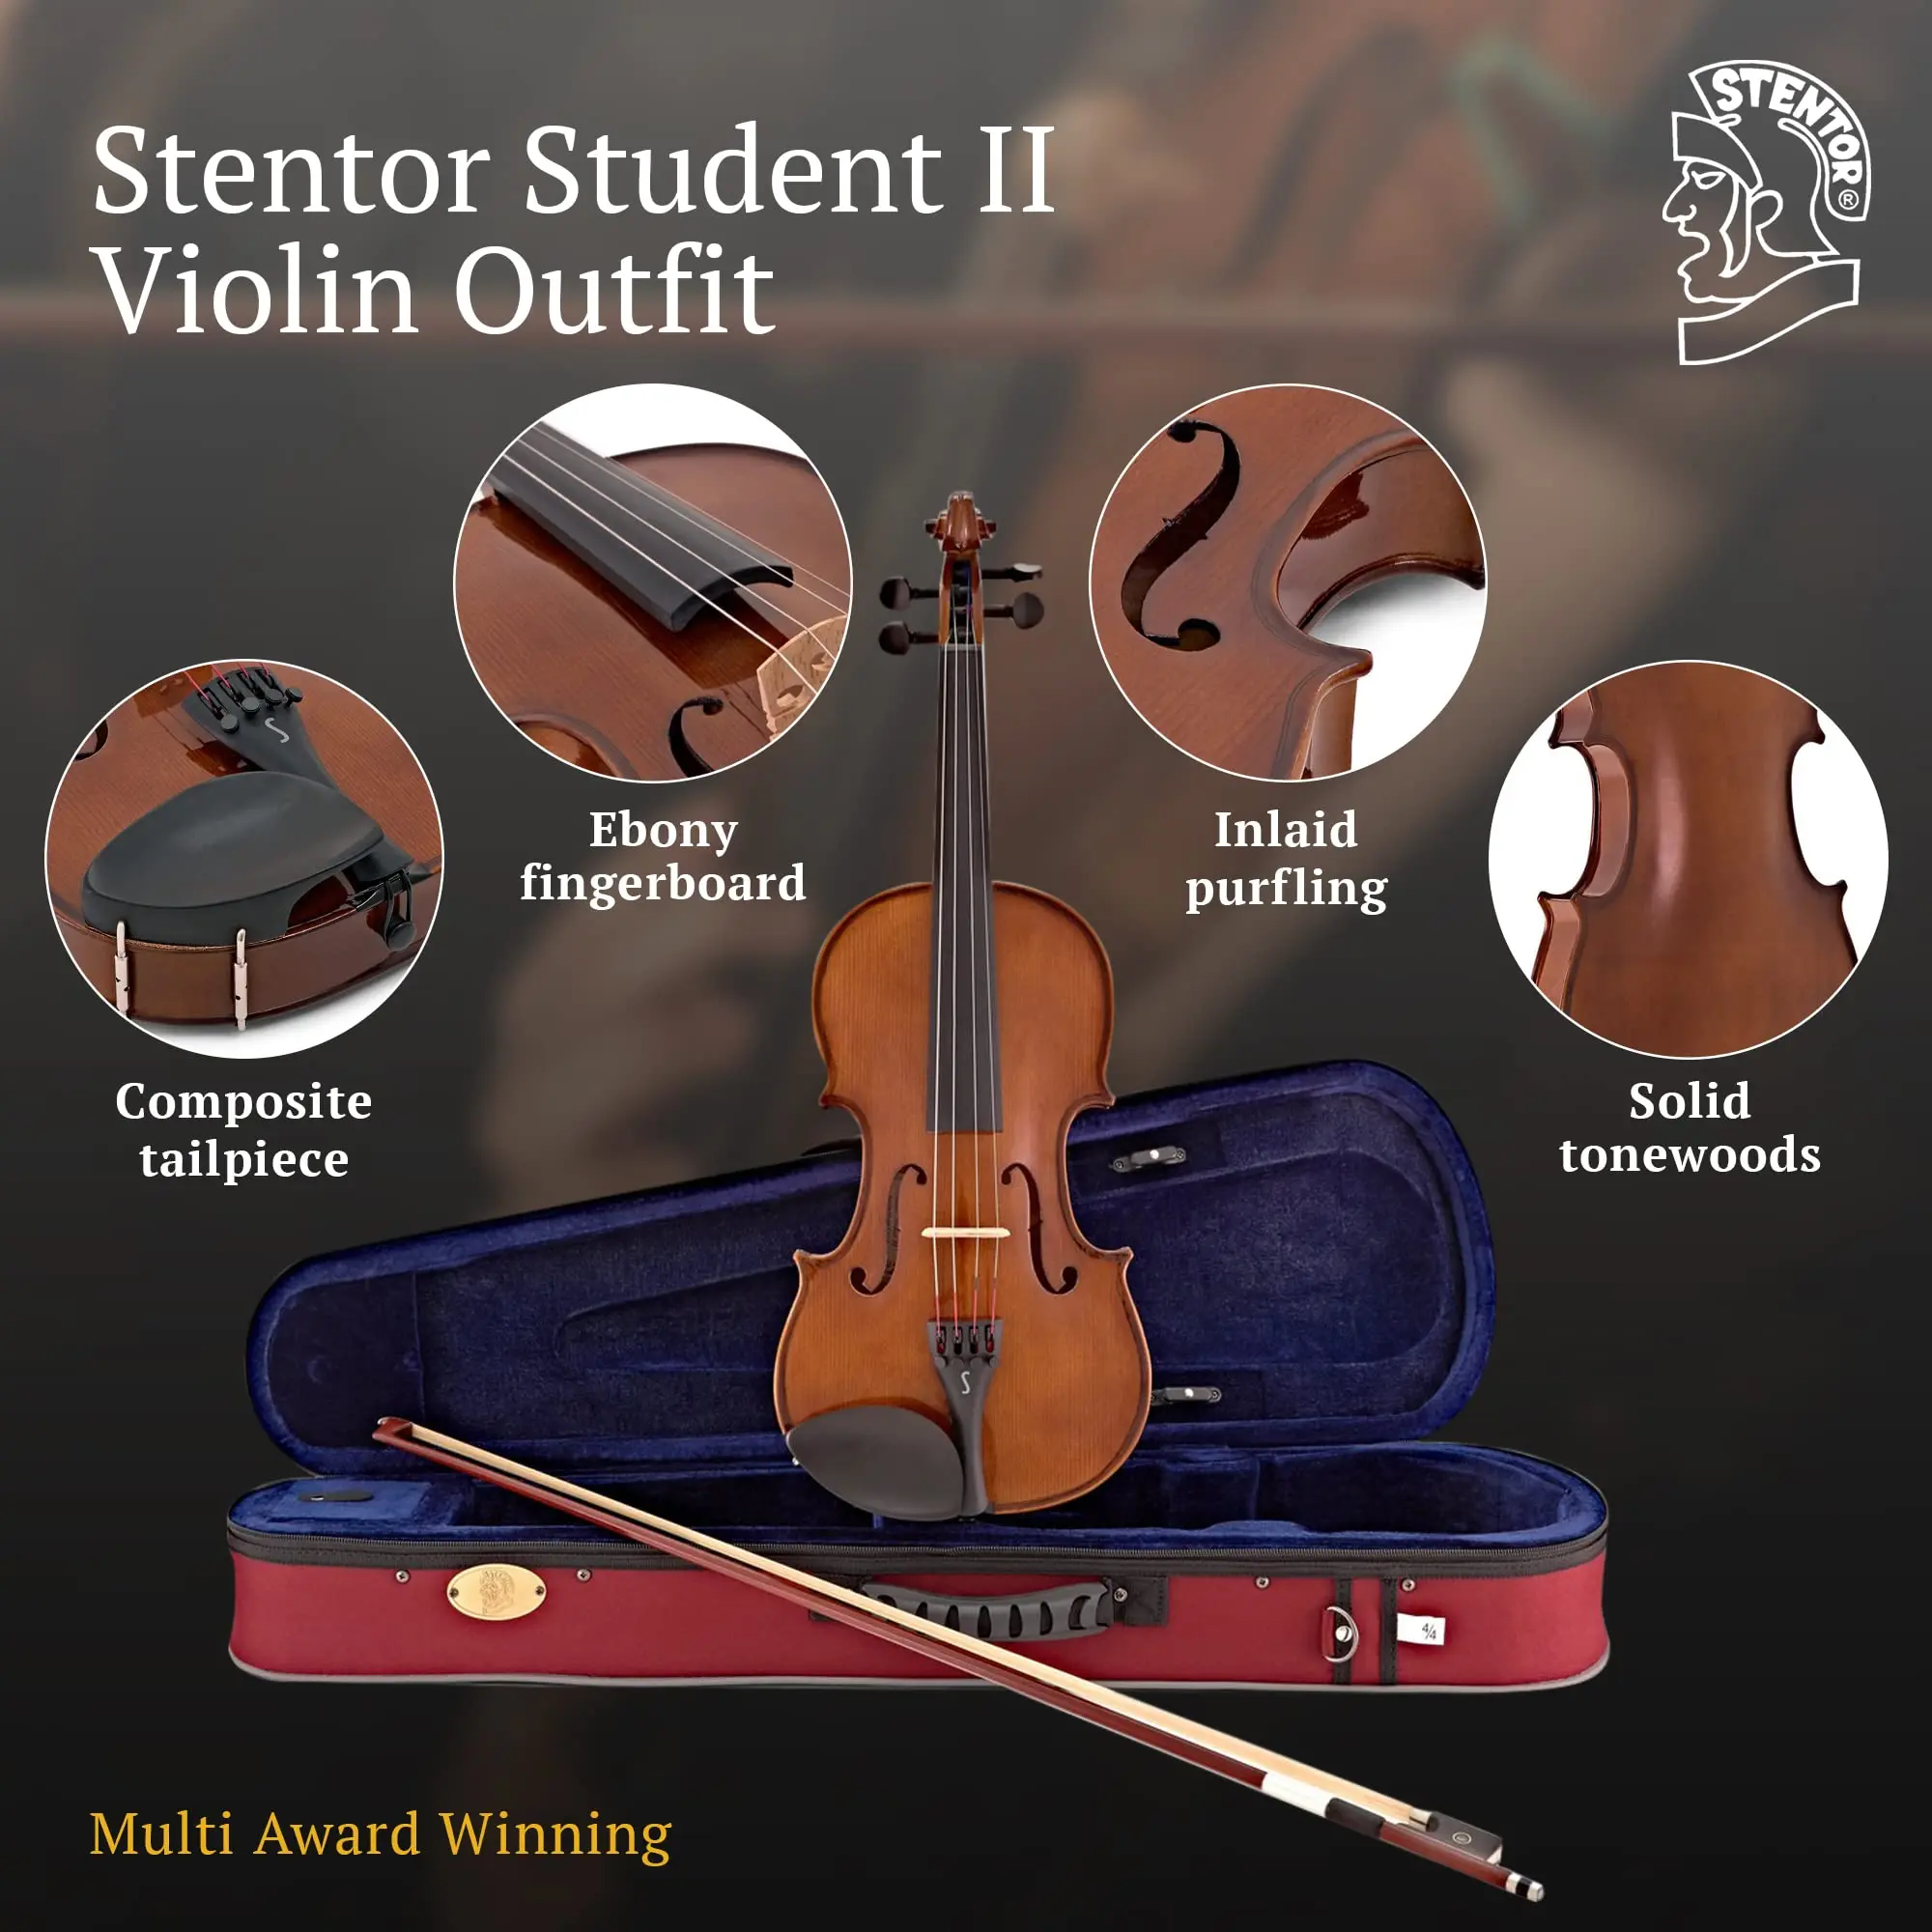 stentor student ii violin - Is Stentor a good beginner violin